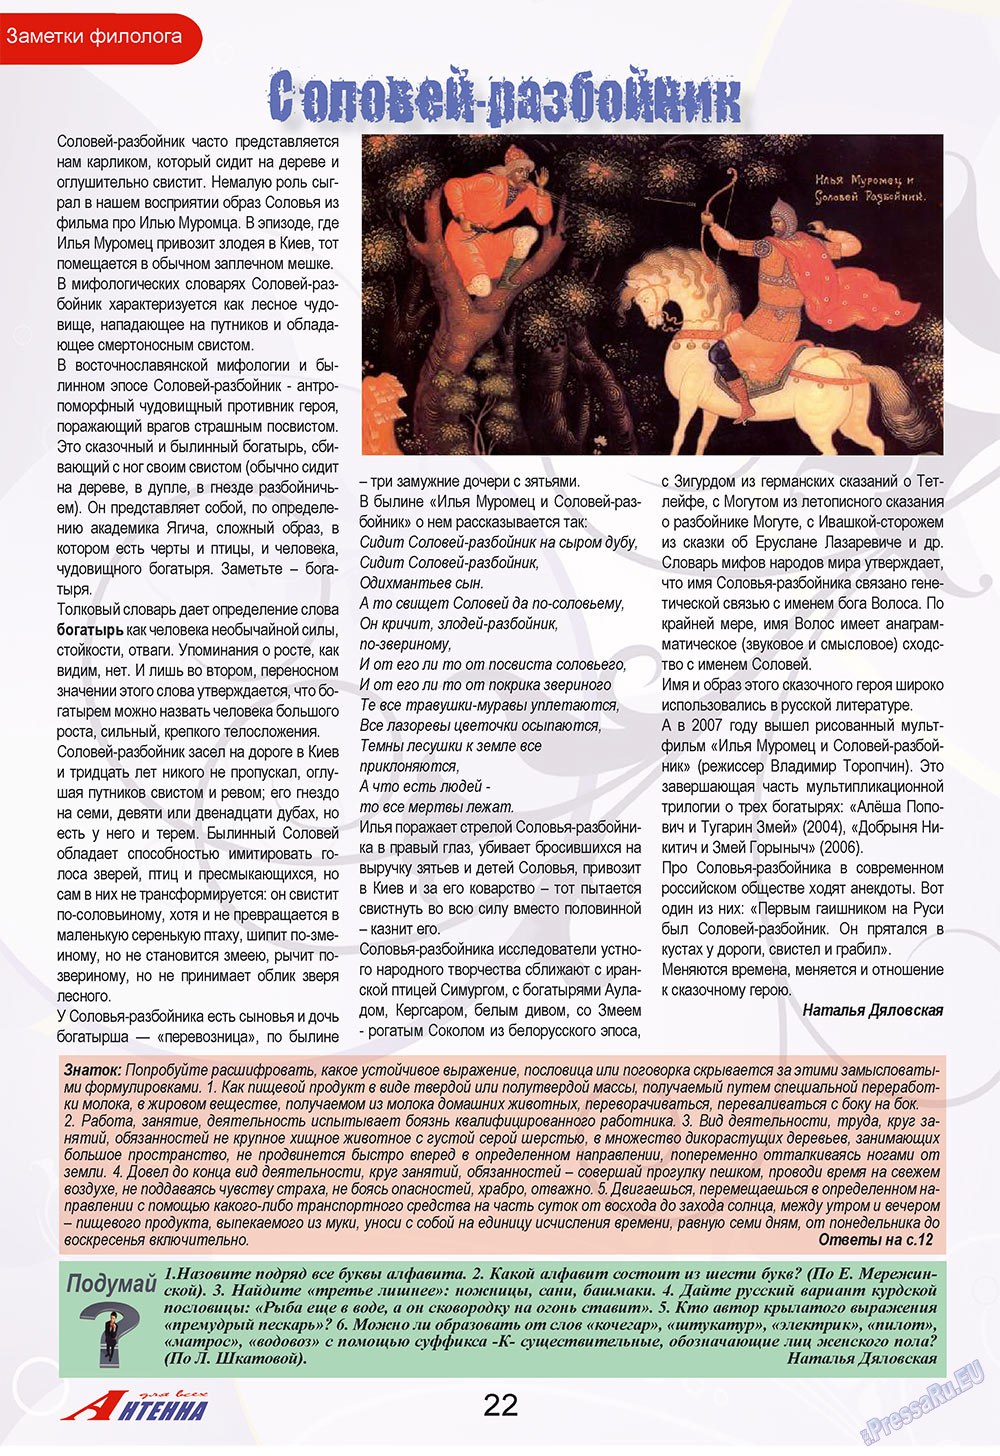 Антенна, журнал. 2009 №8 стр.22